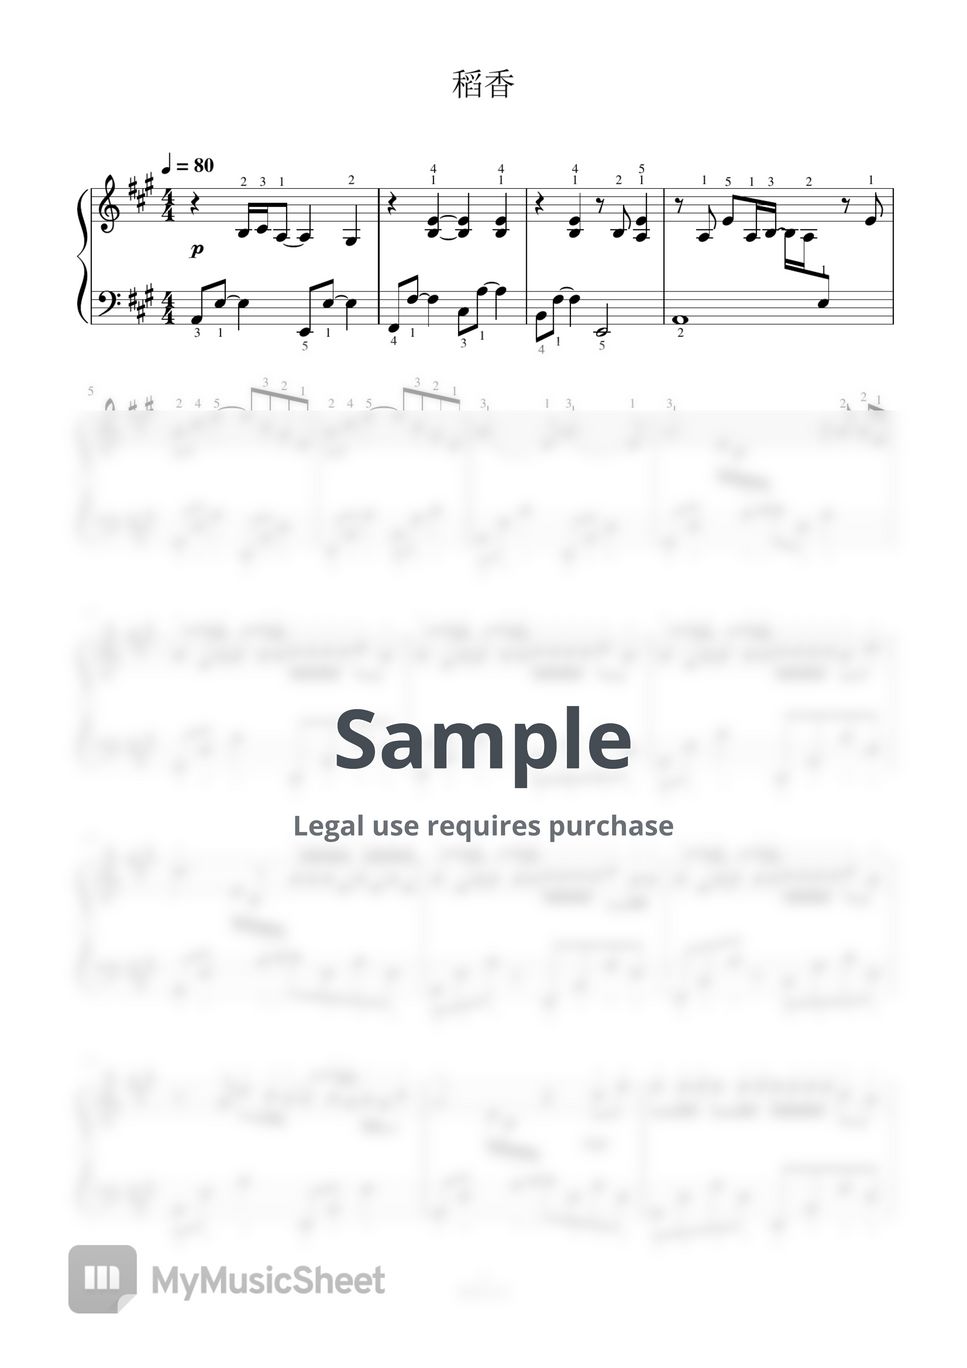 周杰伦 - 稻香-全指法钢琴谱高清正版完整版 (Full Fingering Piano Score) by 紫韵音乐